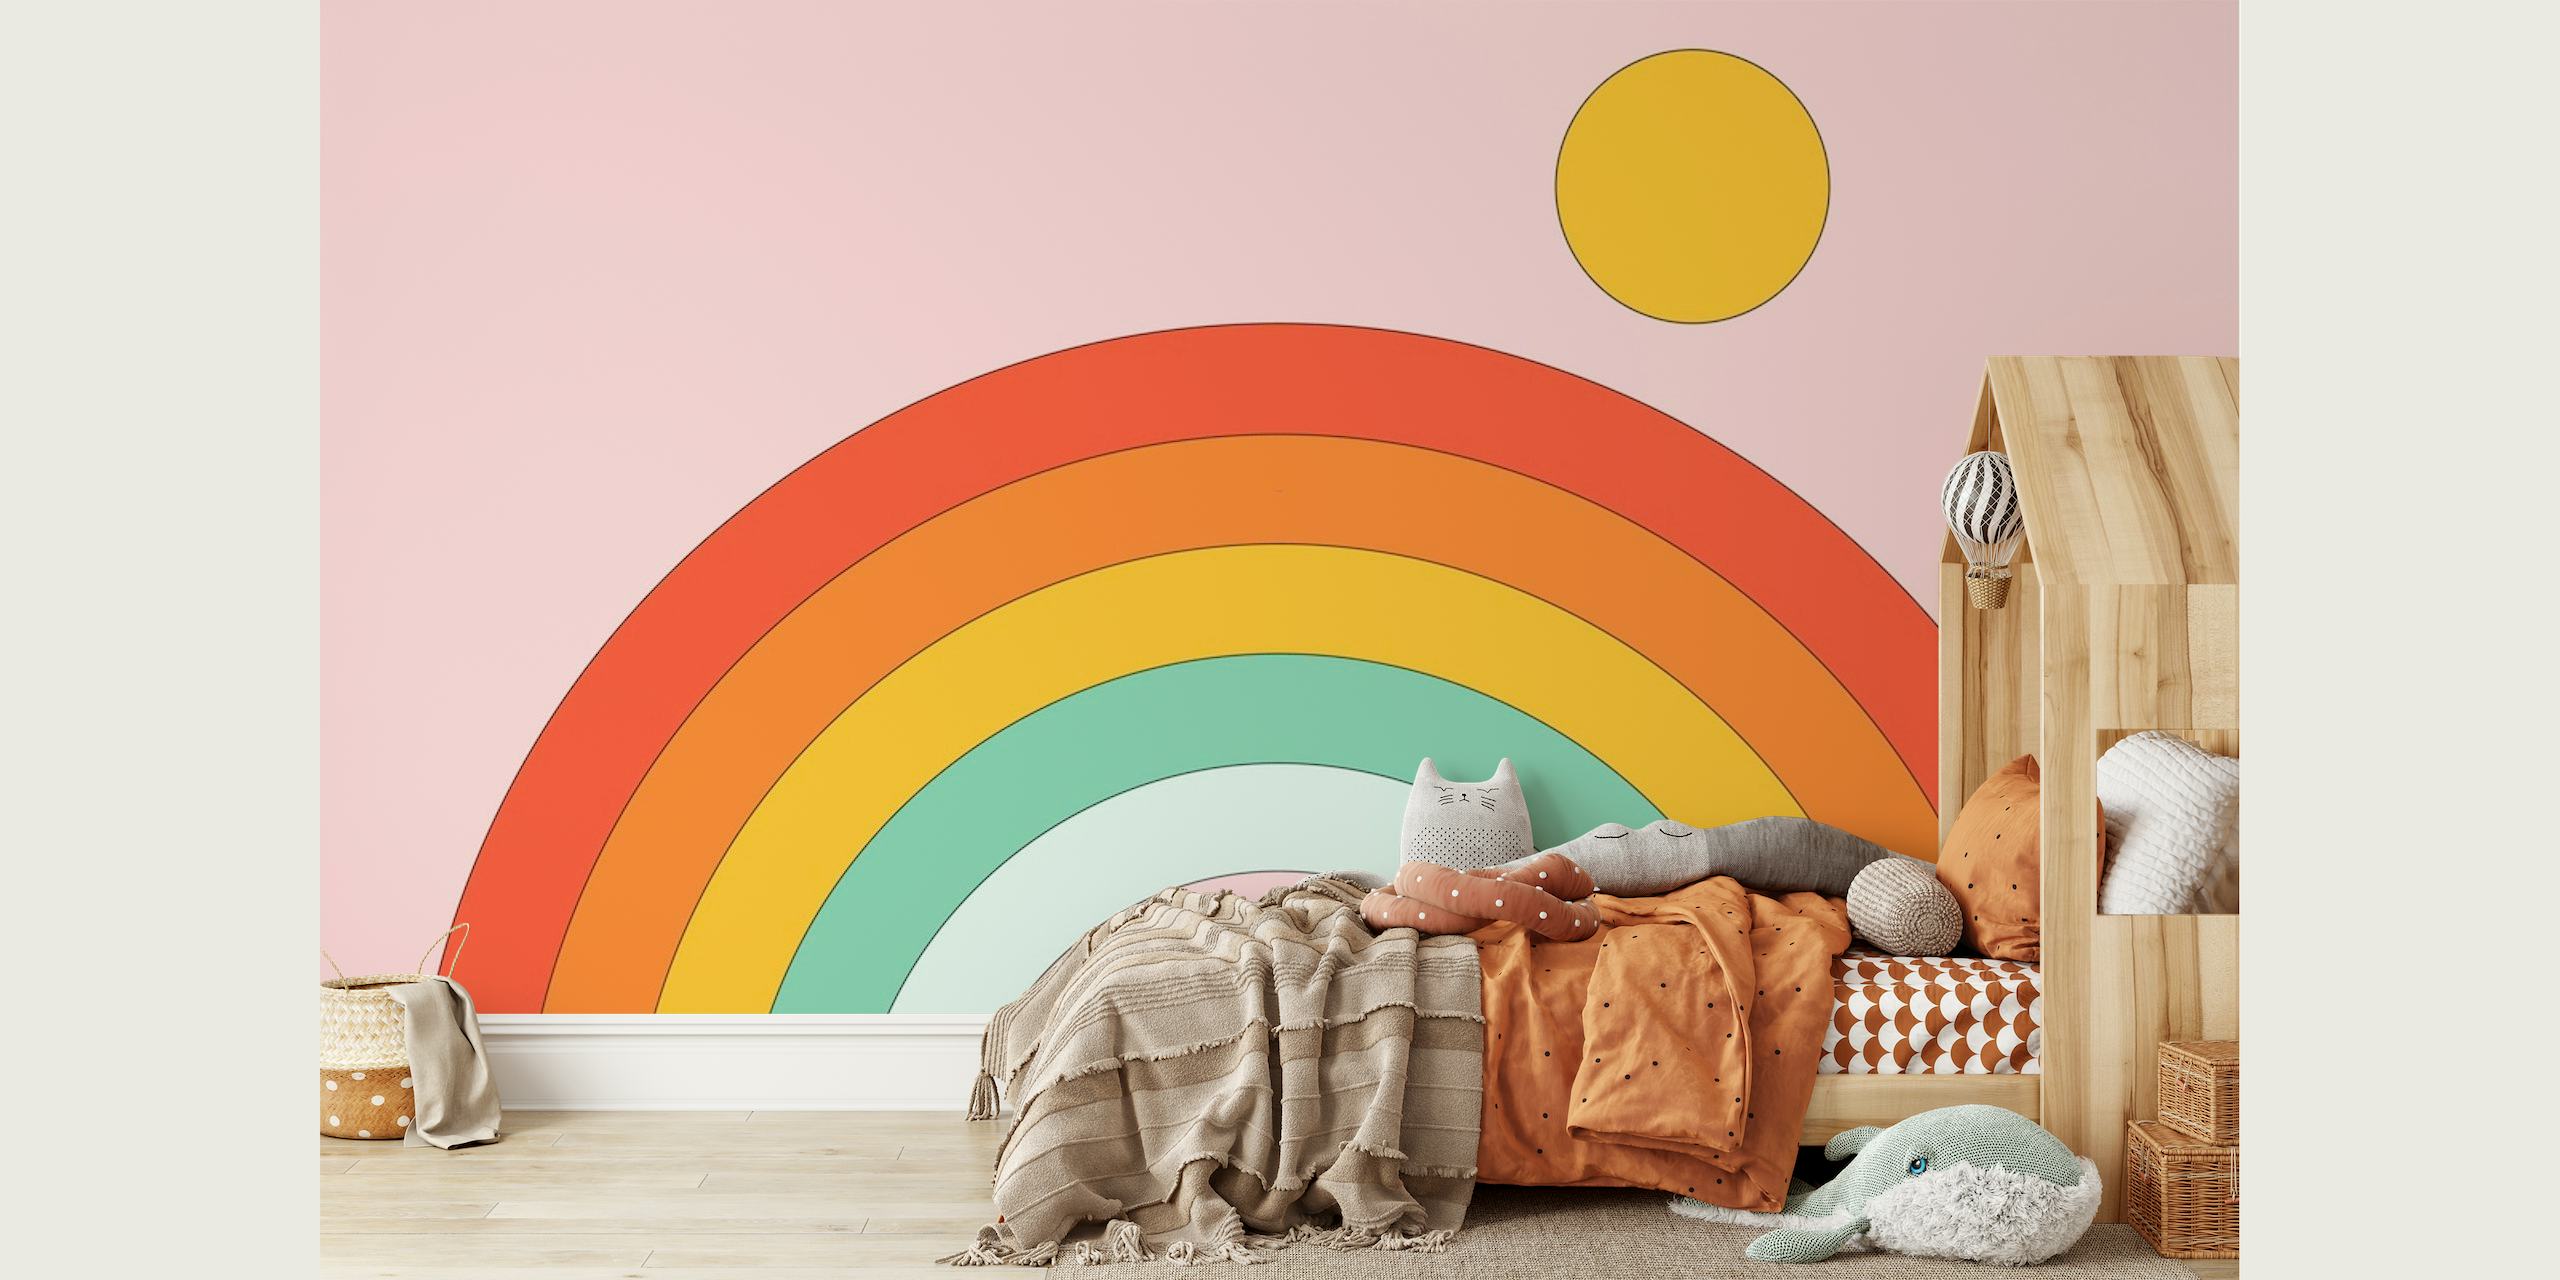 Fotomural colorido arcoíris de estilo retro sobre un fondo rosa